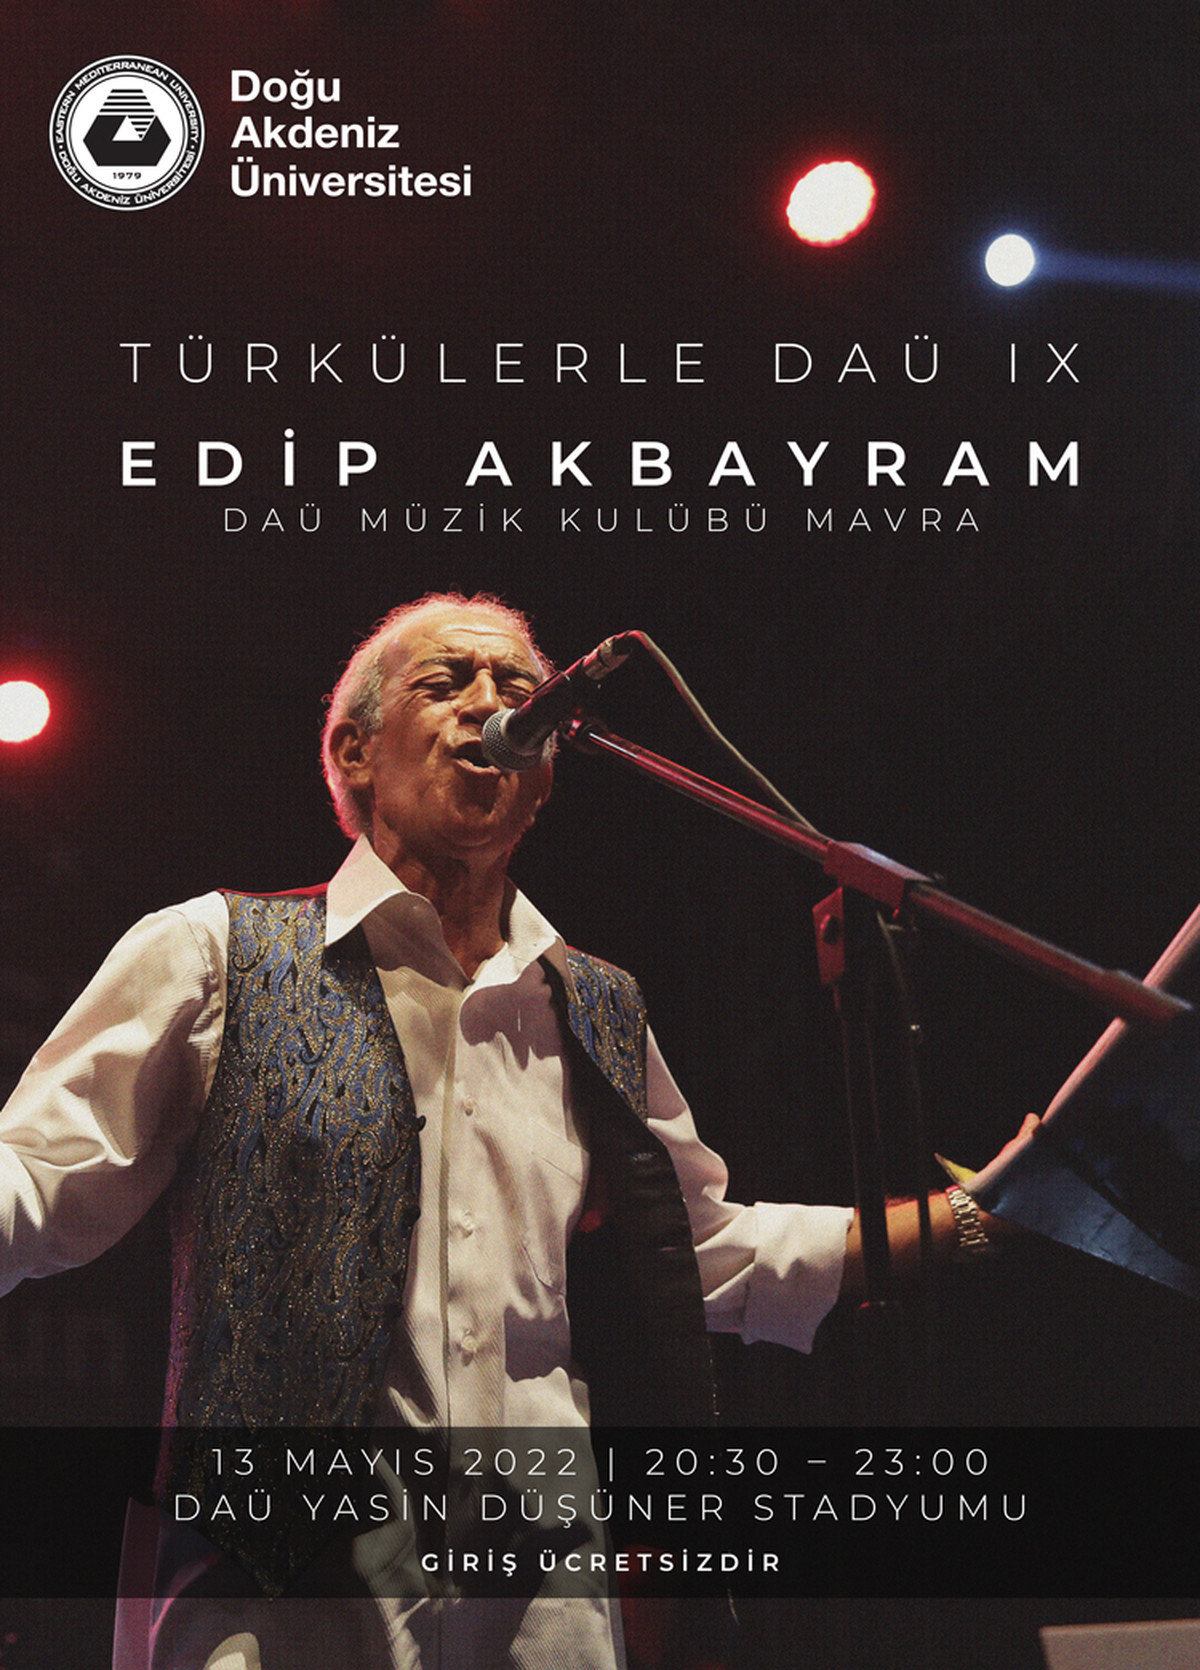 Türkülerle DAÜ - Edip Akbayram